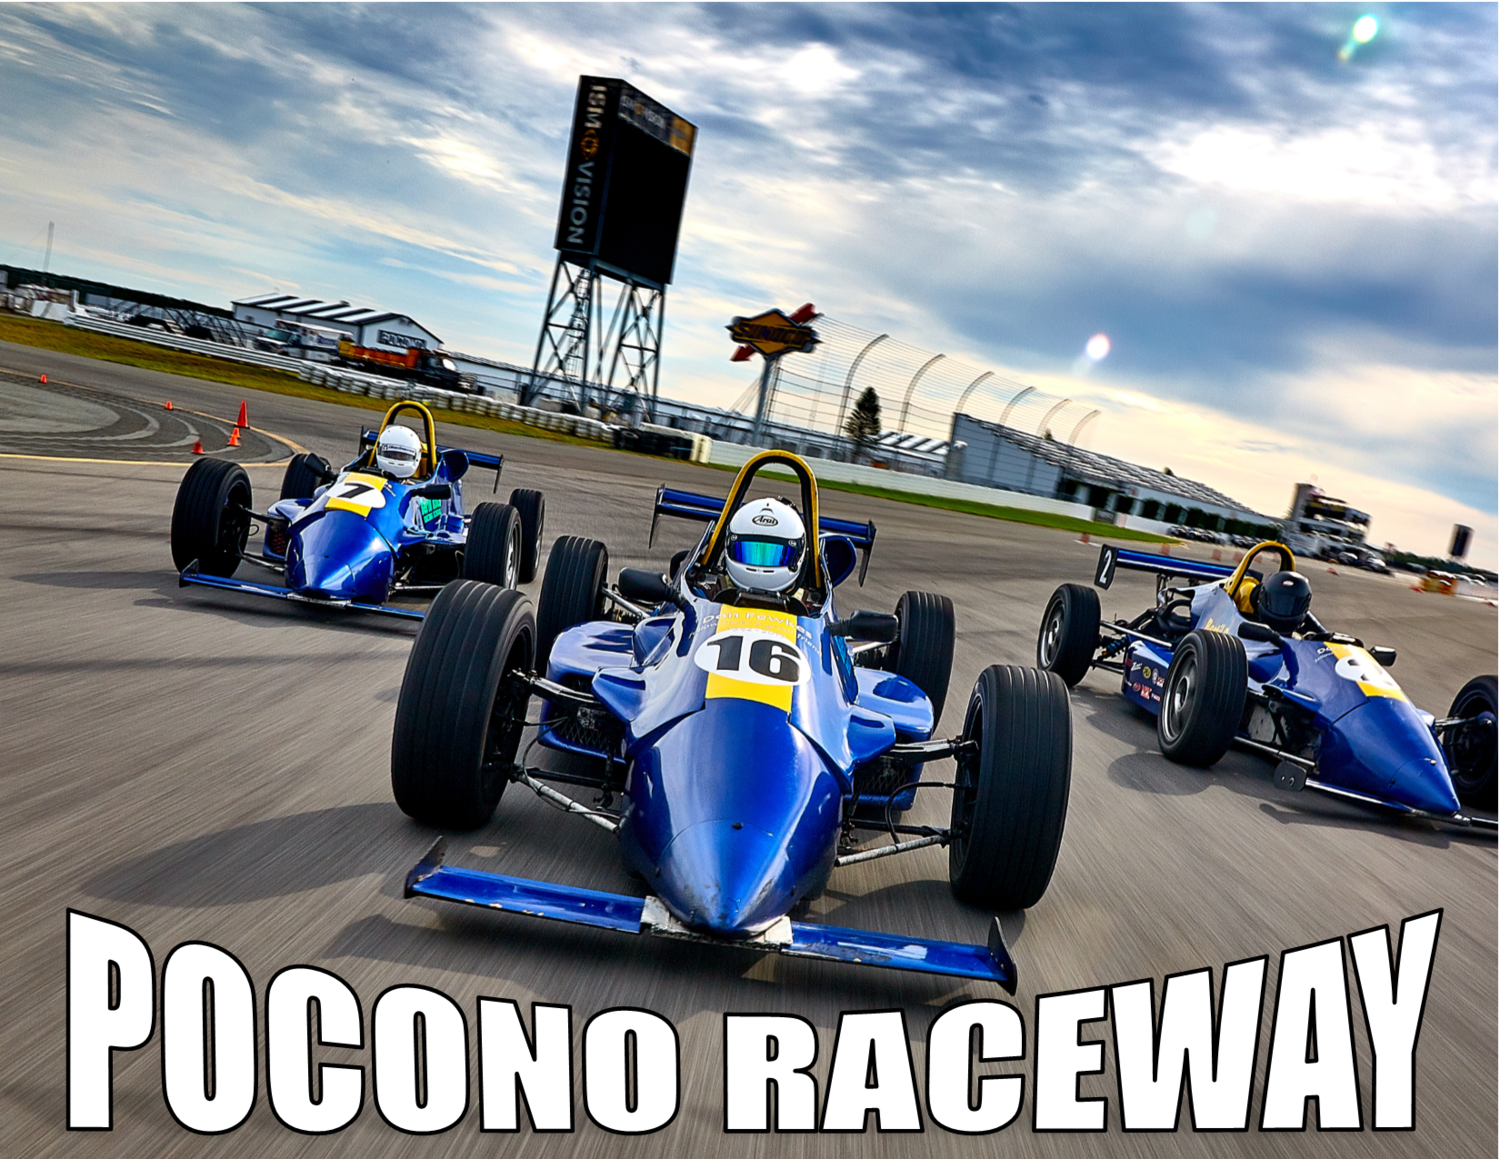 Pocono Raceway - 2 Day Advanced Road Racing School